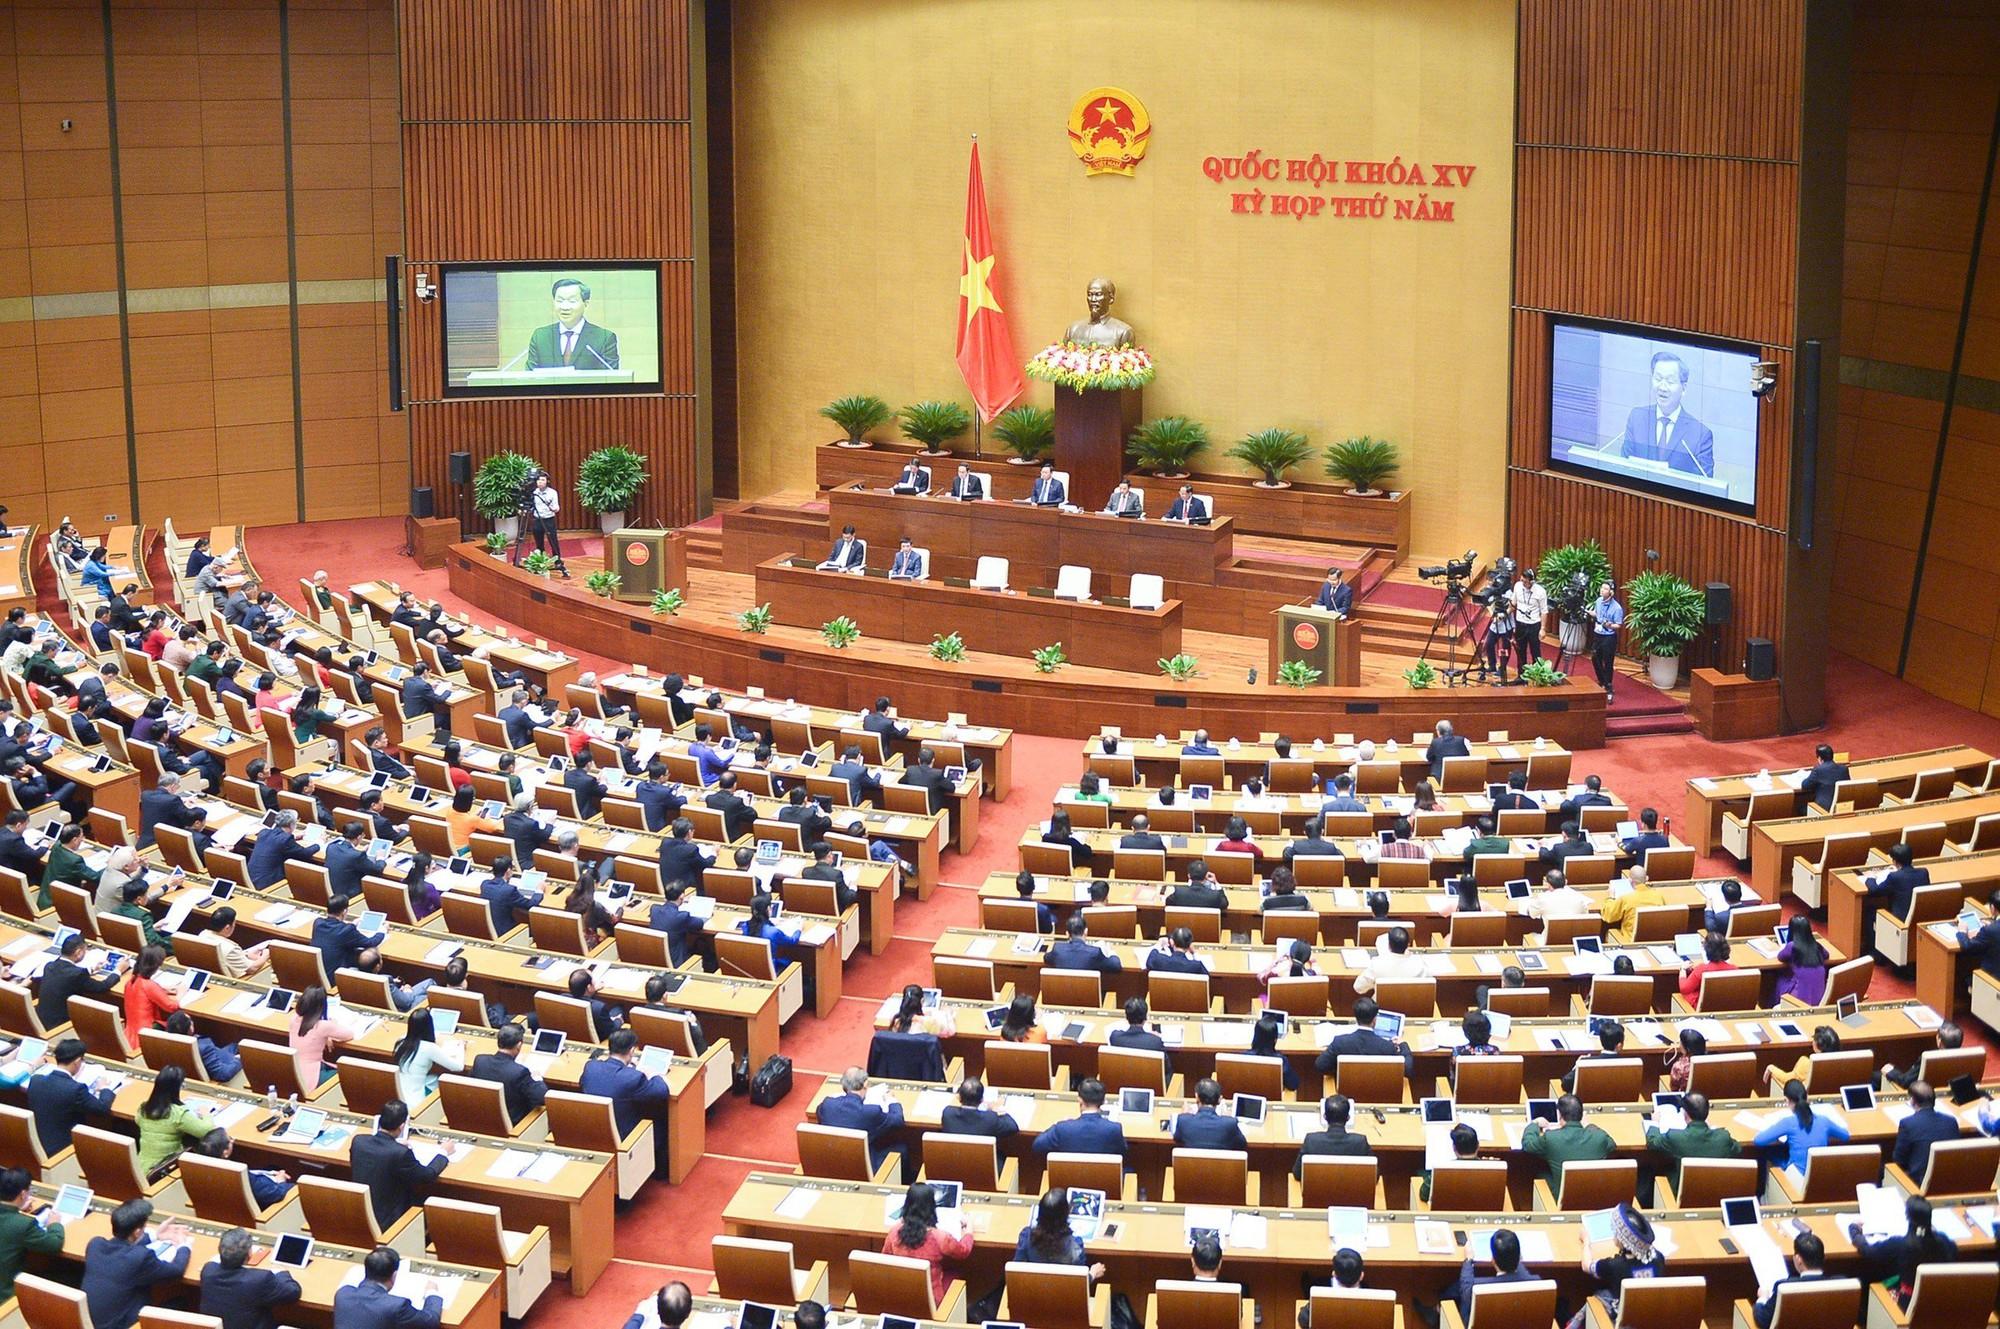 Phó Thủ tướng Lê Minh Khái báo cáo giải trình trước Quốc hội - Ảnh 1.